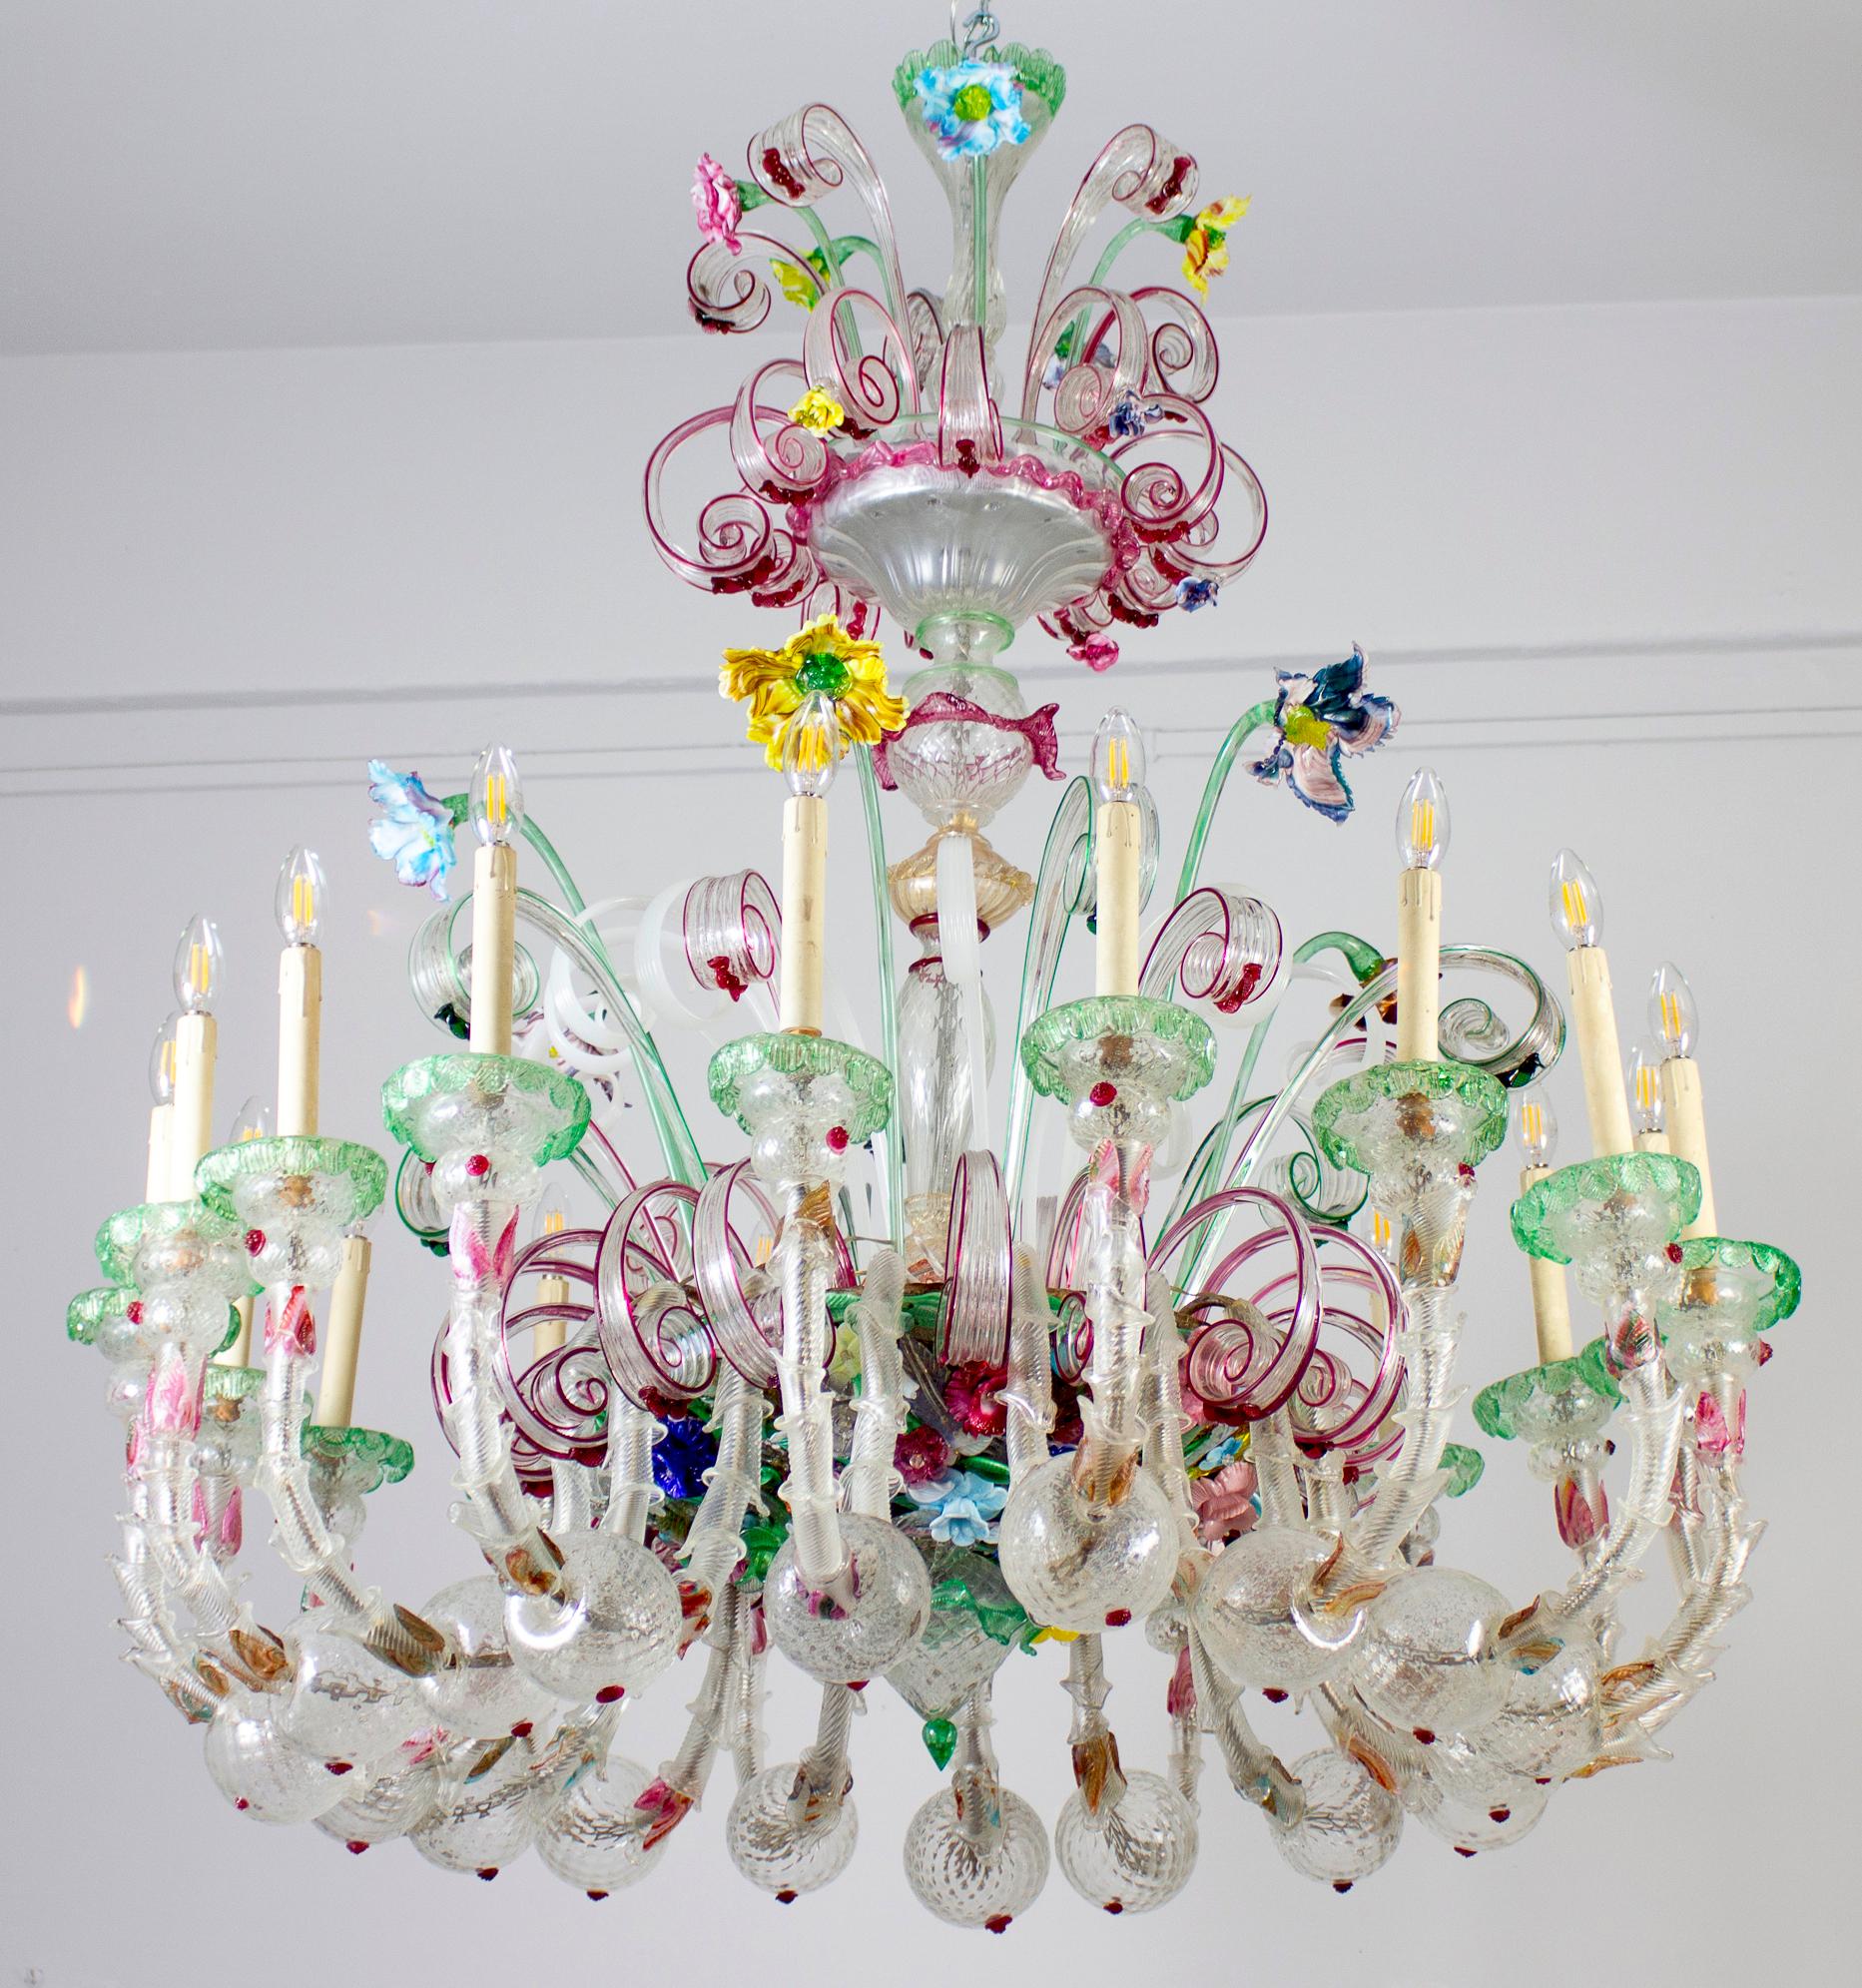 Spektakulärer Ca' Rezzonico Multicolor Murano Glas Kronleuchter mit 18 Armen. Die Gläser sind mit Grün und Amethyst verziert  Einschlüsse in perfektem Zustand. Leuchtend bunte Blumen aus Glaspaste. Es ist ein wahres Kunstwerk. 

 18 E 14-Glühbirnen